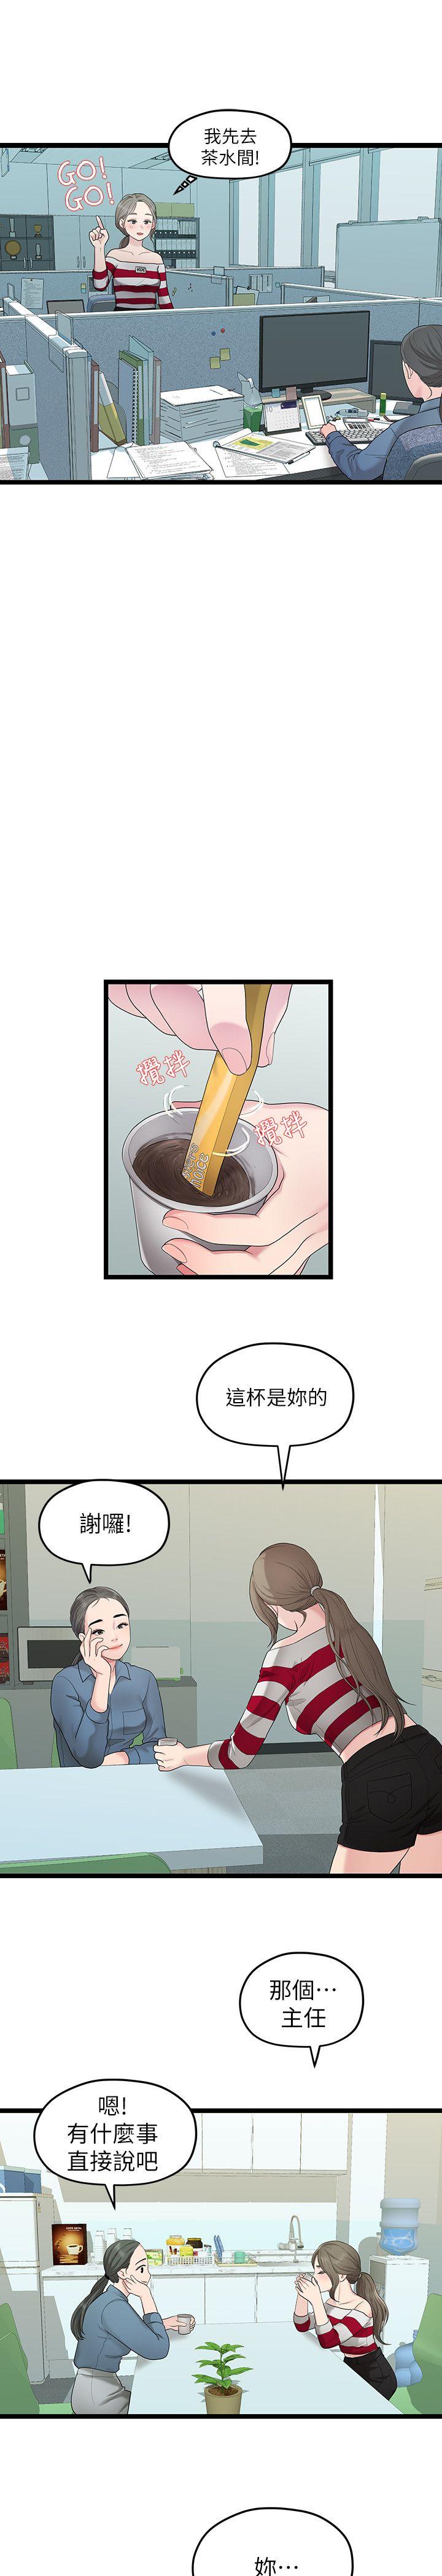 韩国污漫画 我們的非常關系 第33话-无法继续交往的理由 5